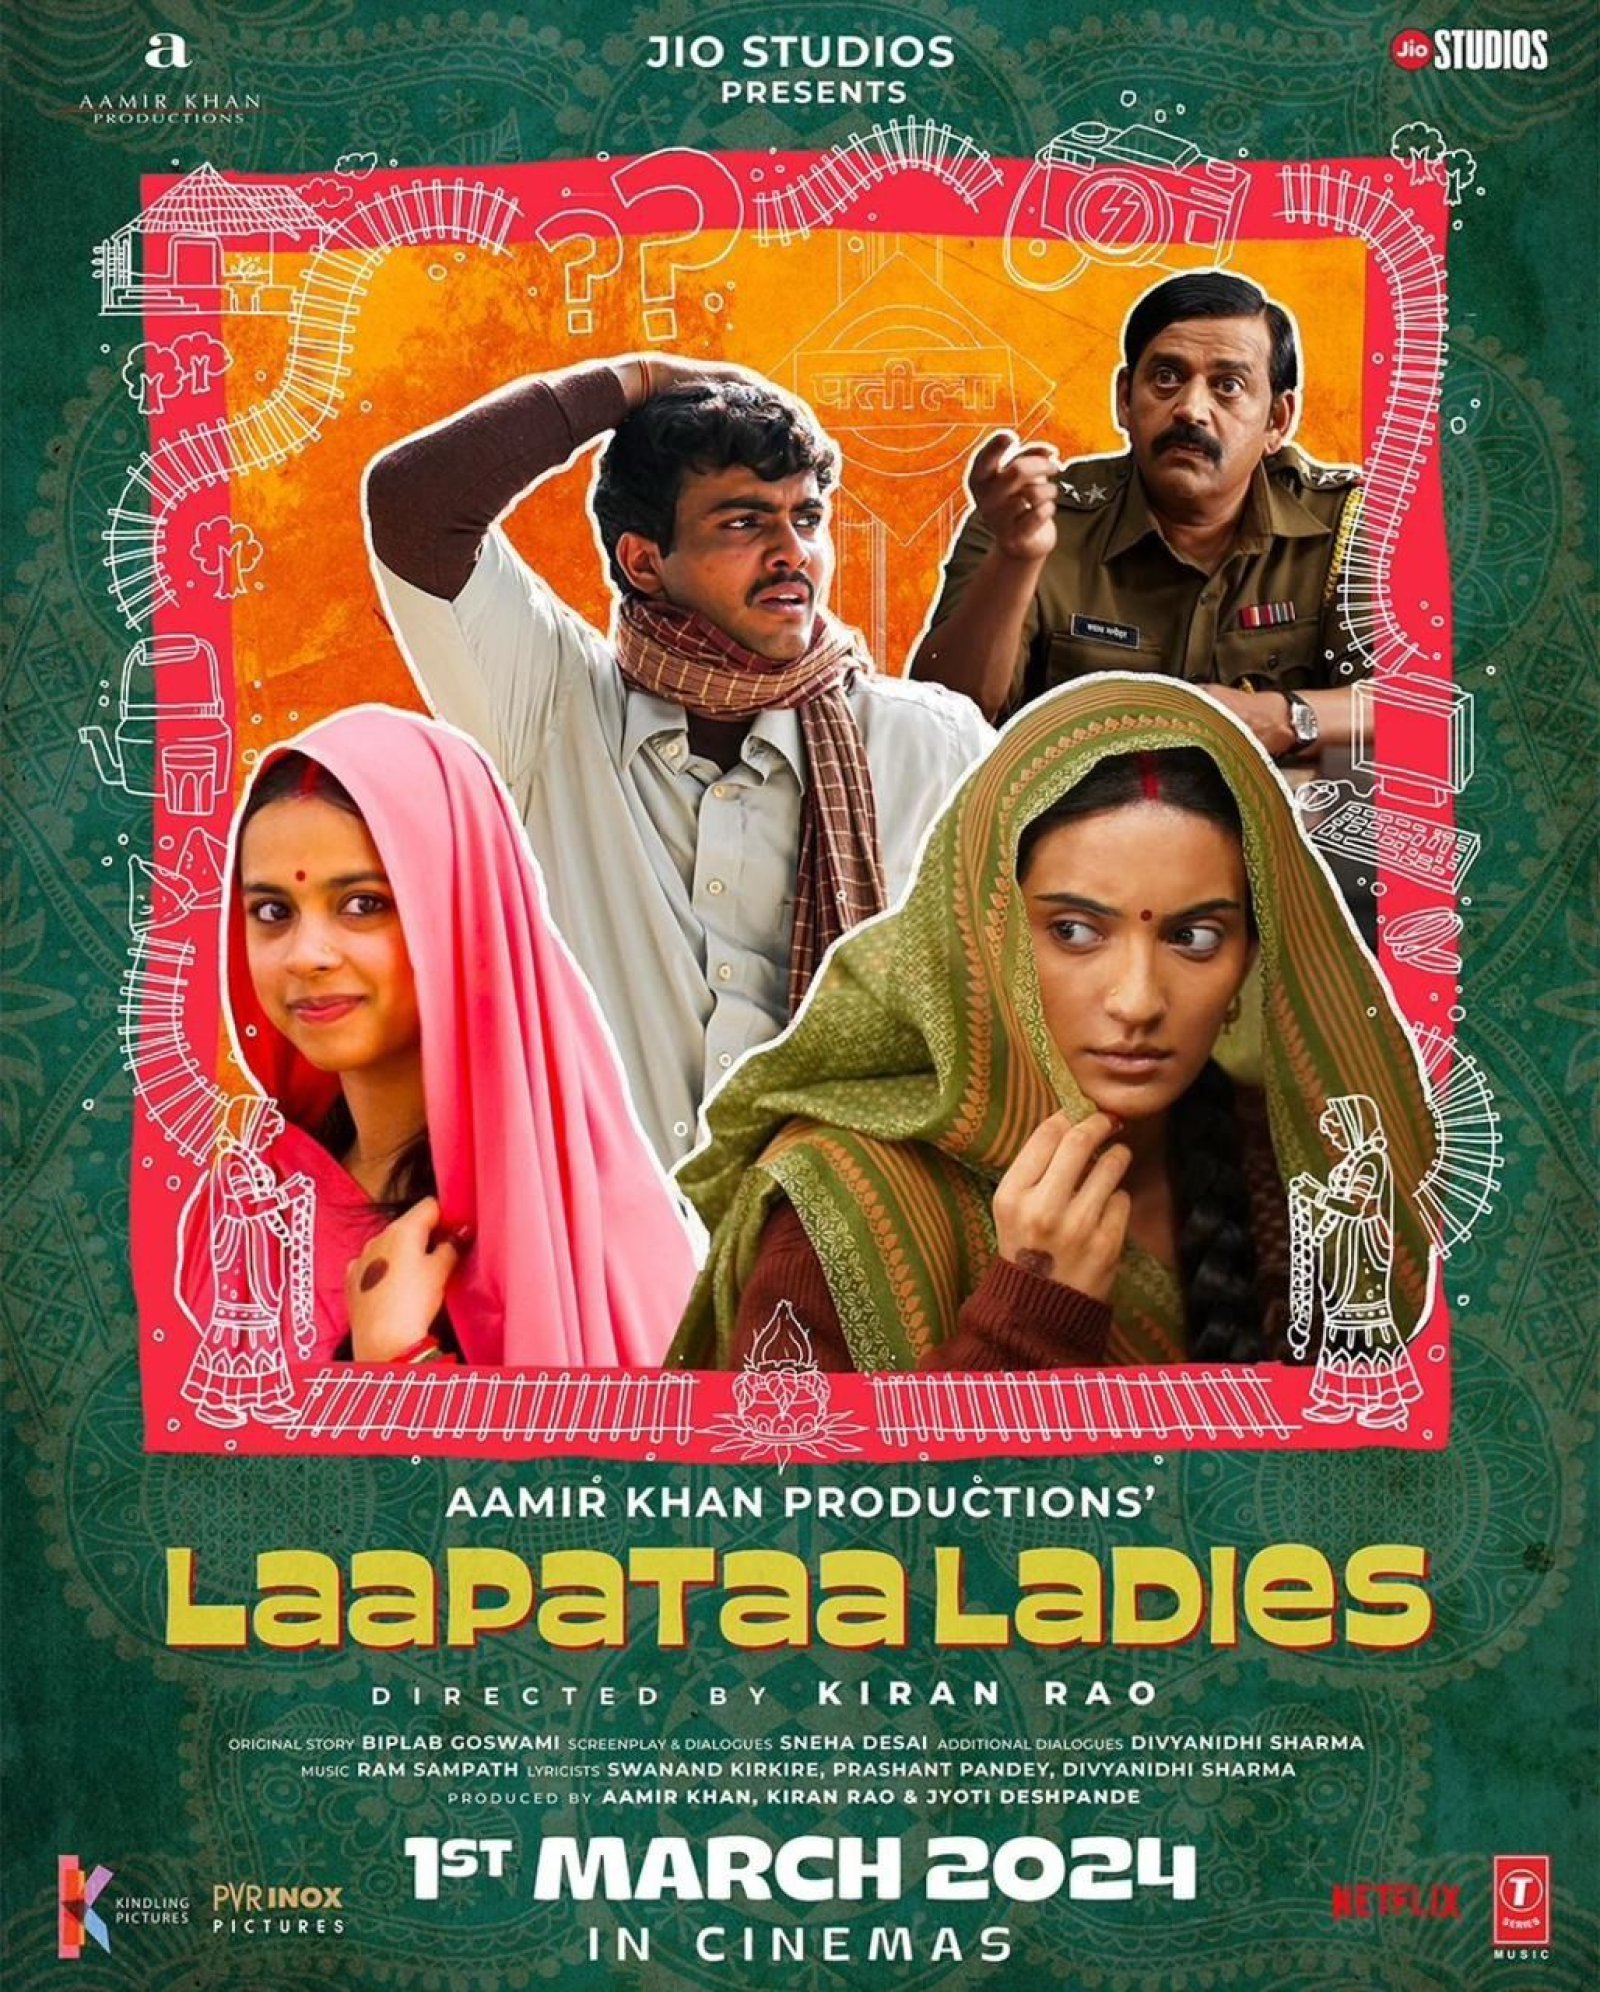 किरण राव के निर्देशन में बनी फिल्म 'लापता लेडीज' के लिए दर्शकों का उत्साह आया नजर, दिल्ली में स्क्रीनिंग के दौरान दर्शकों ने बरसाया प्यार